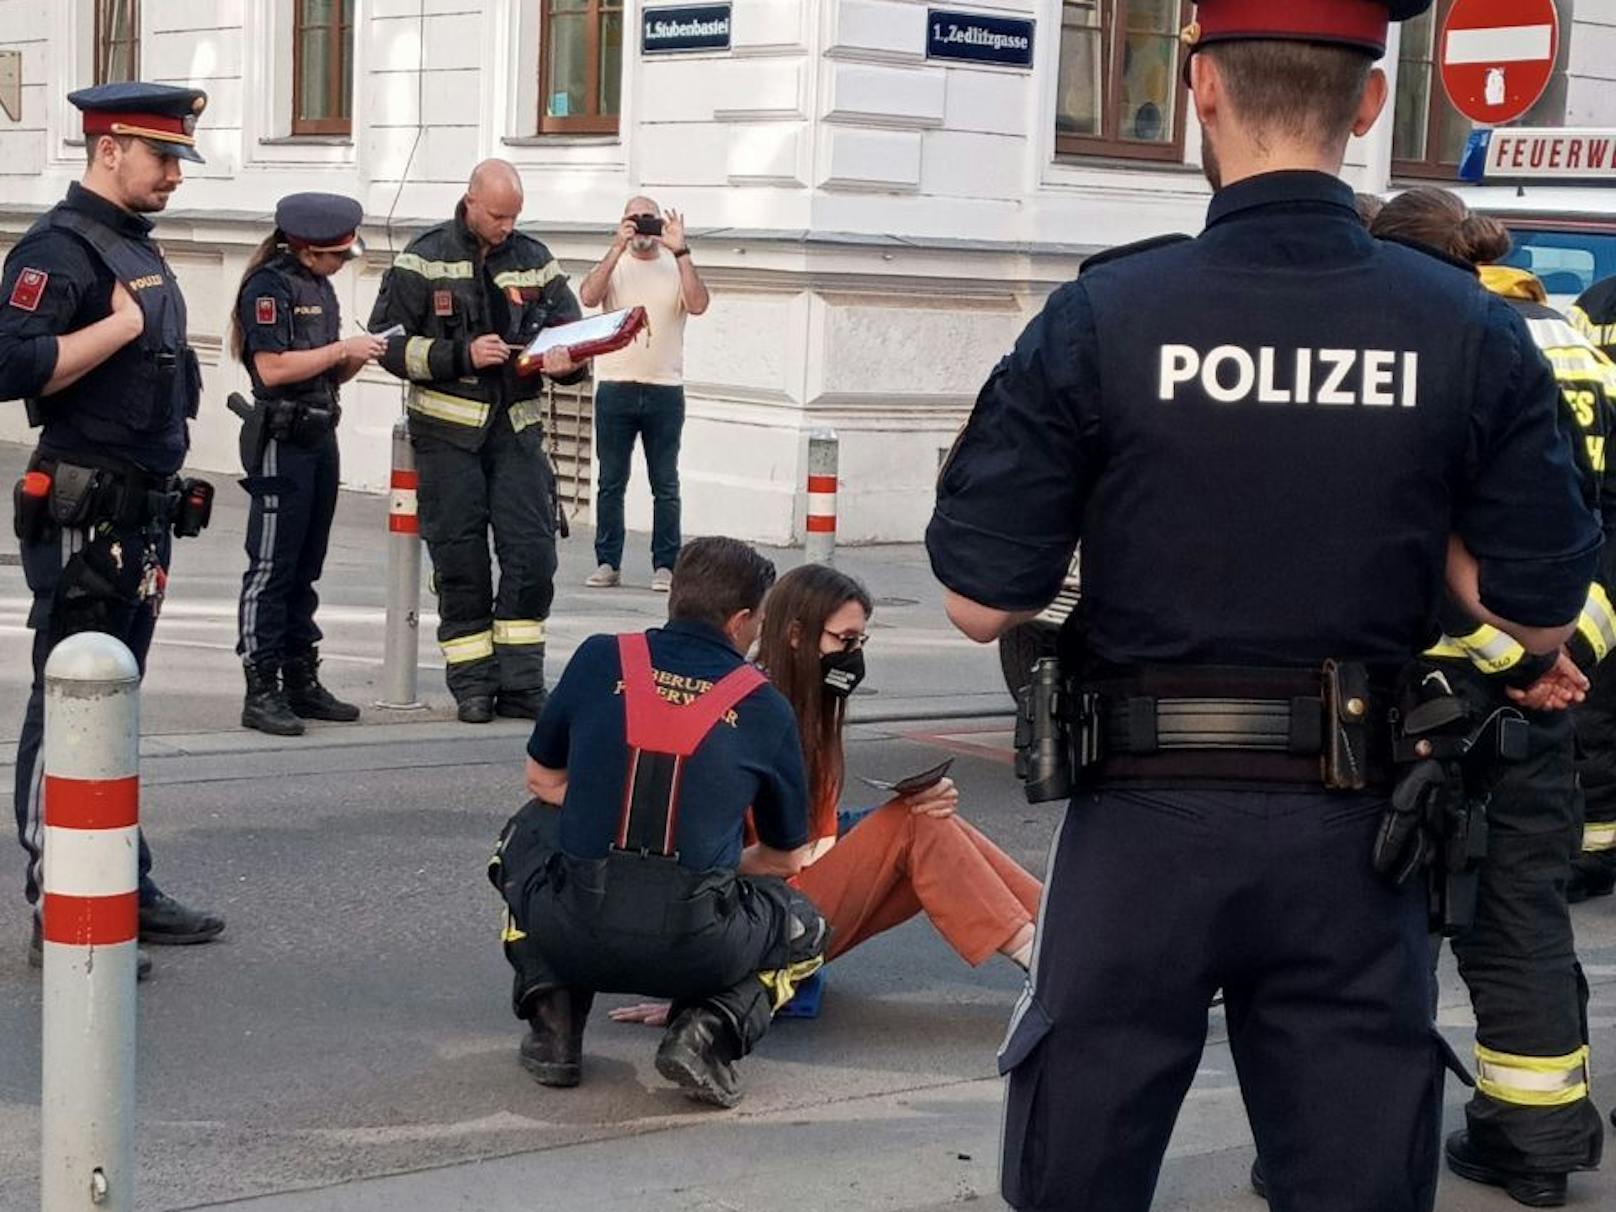 Polizei, Feuerwehr und Rettung waren bei der Klima-Protestaktion in der Wiener Innenstadt vor Ort.